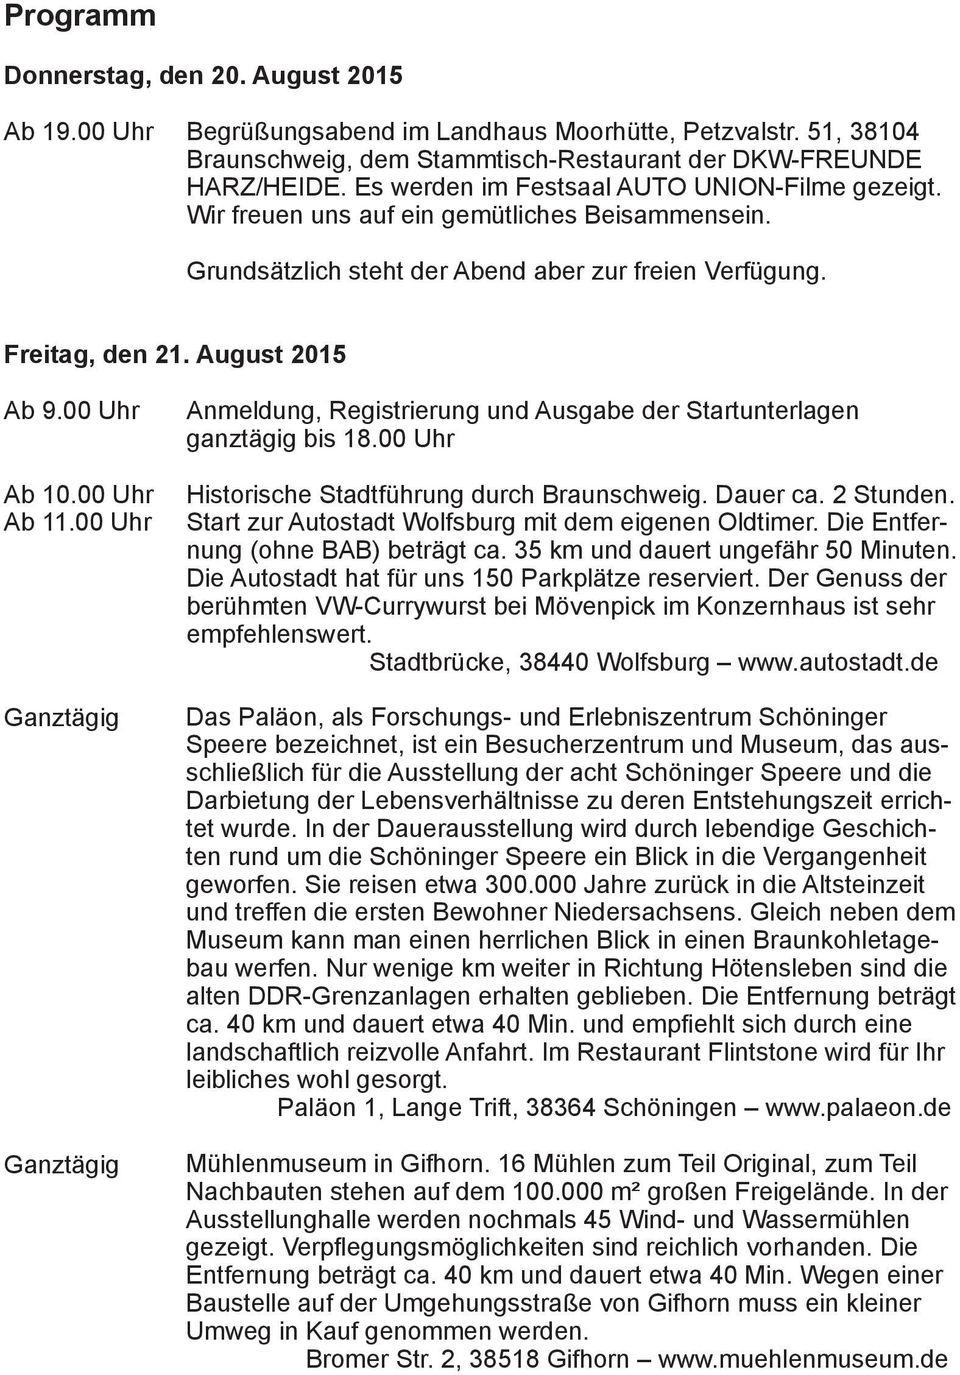 00 Uhr Ab 10.00 Uhr Ab 11.00 Uhr Ganztägig Ganztägig Anmeldung, Registrierung und Ausgabe der Startunterlagen ganztägig bis 18.00 Uhr Historische Stadtführung durch Braunschweig. Dauer ca. 2 Stunden.